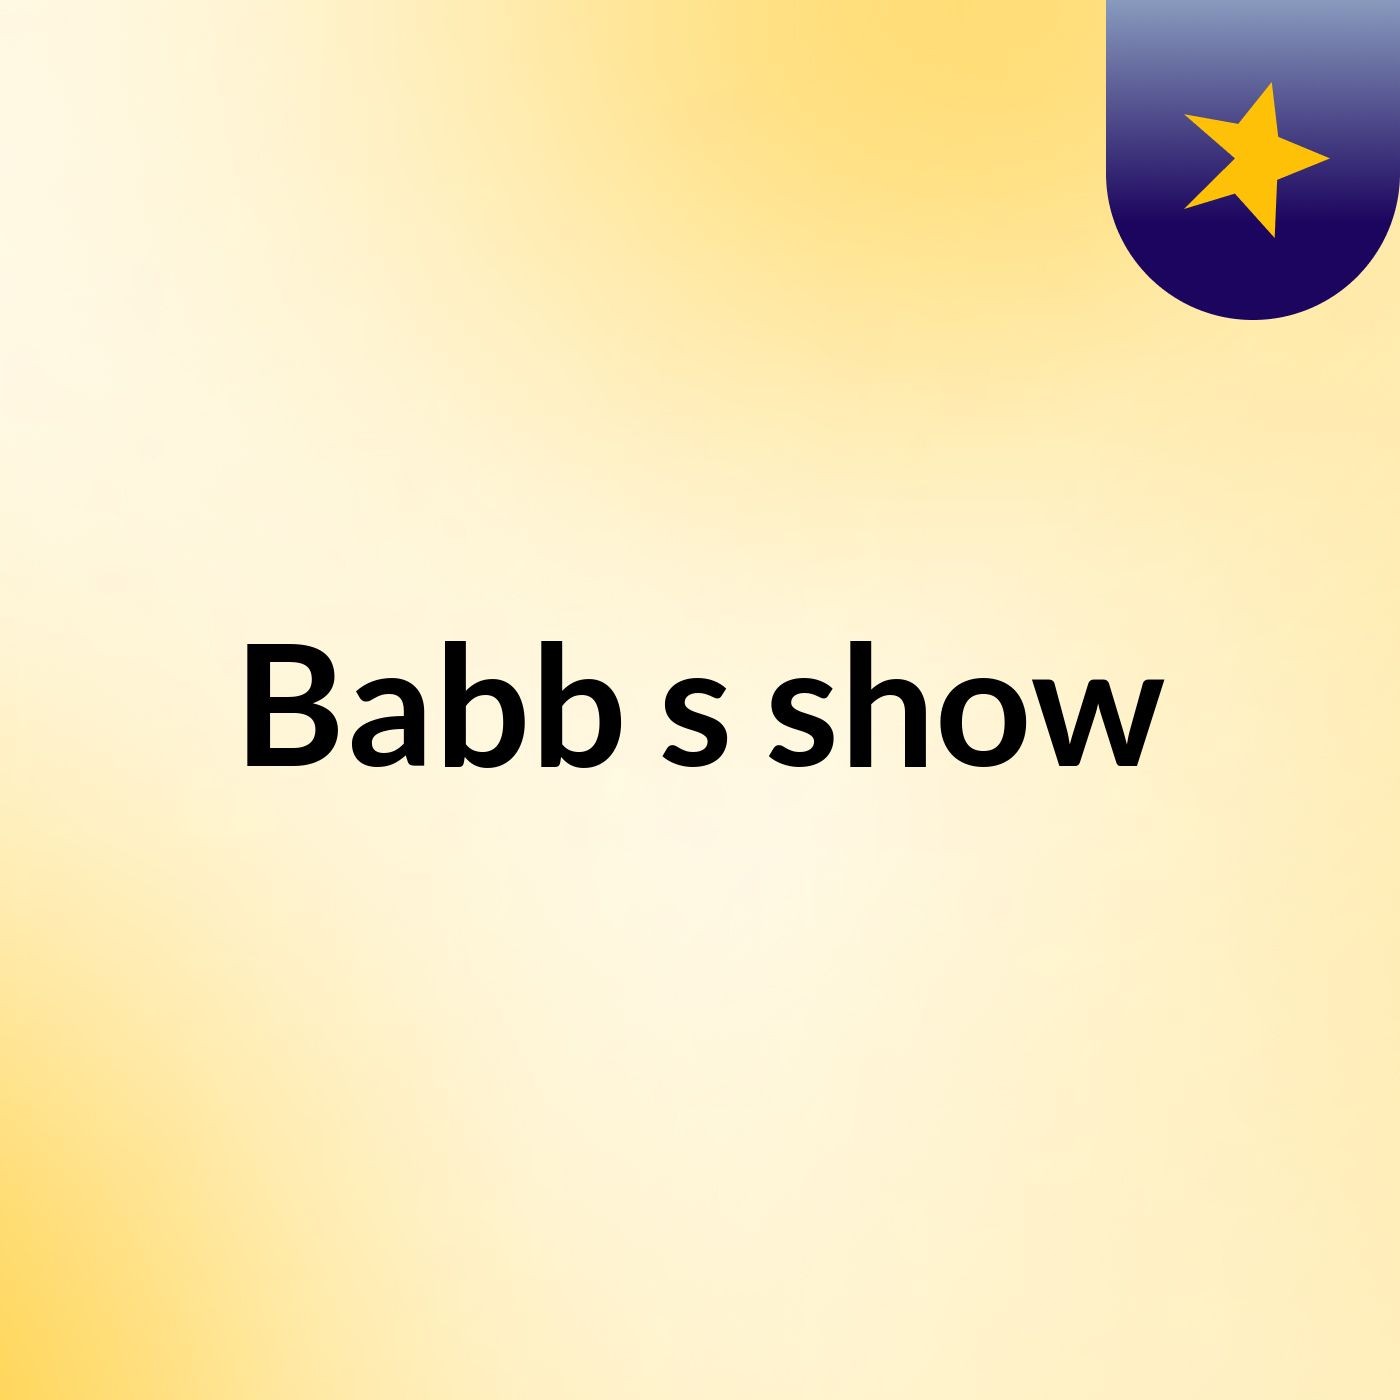 Babb's show